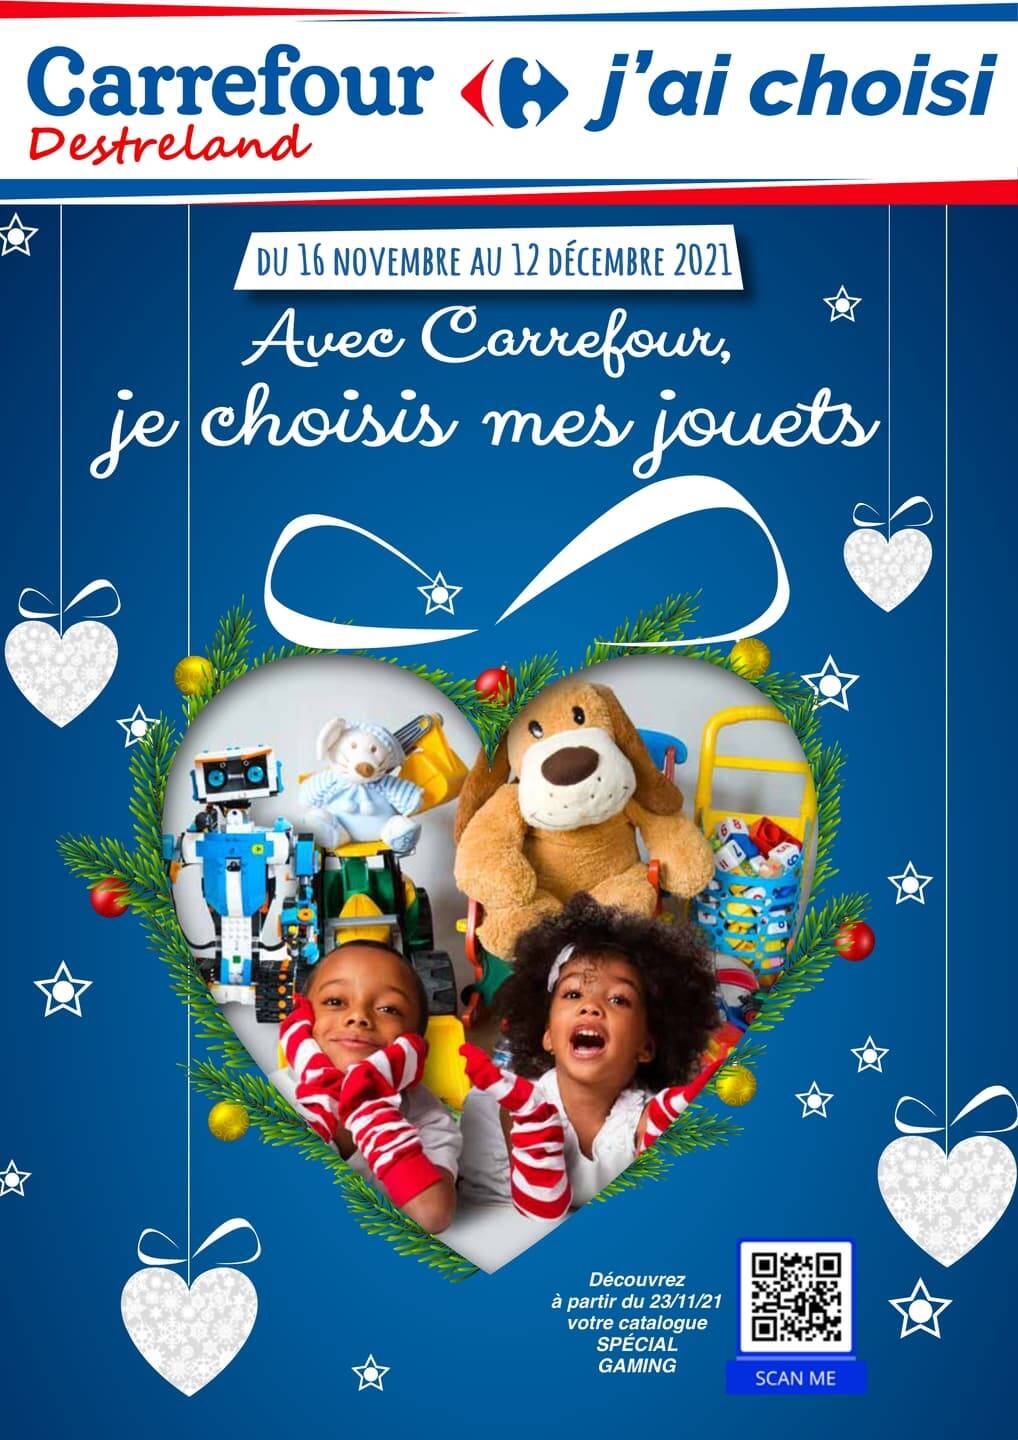 Catalogue Carrefour Guadeloupe de Noël 2021